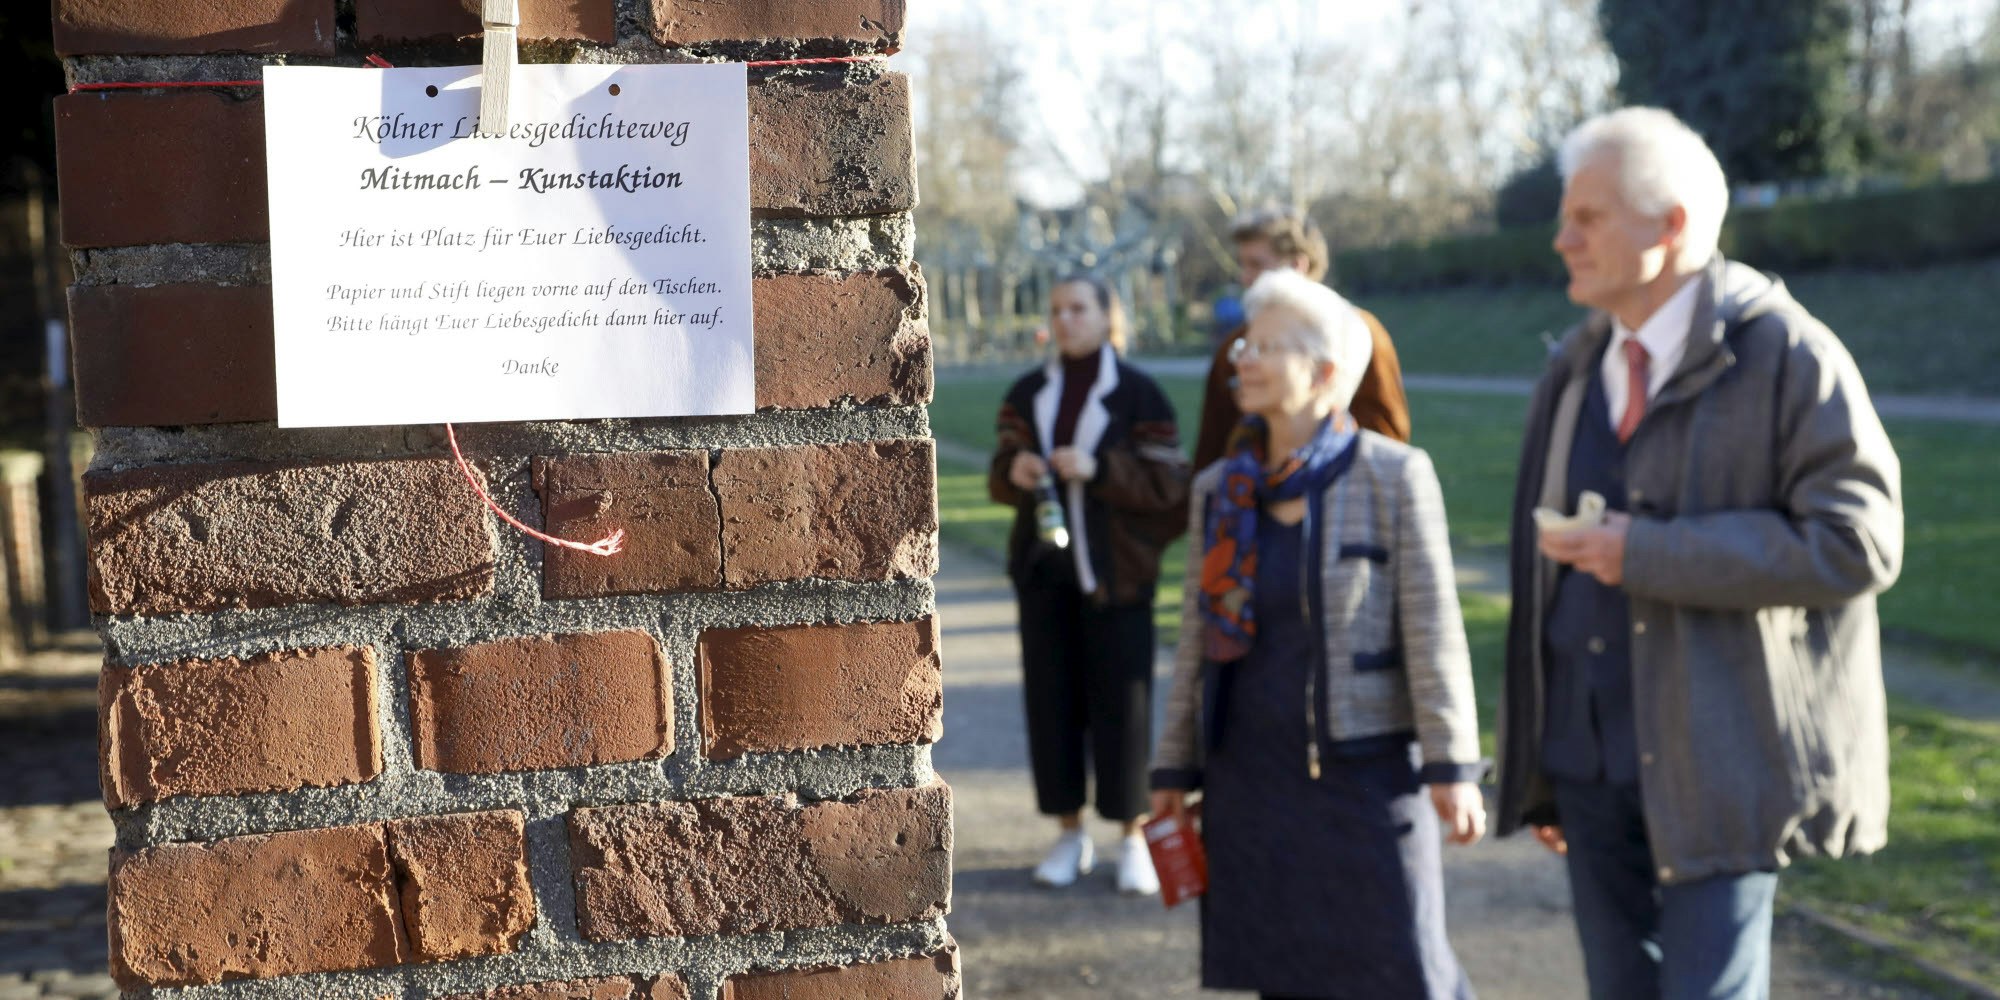 Kölner Liebesgedichteweg, Mitmach-Kunstaktion, Hier ist Platz für Euer Liebesgedicht, stand auf den Zetteln im Friedenspark. Foto: kra